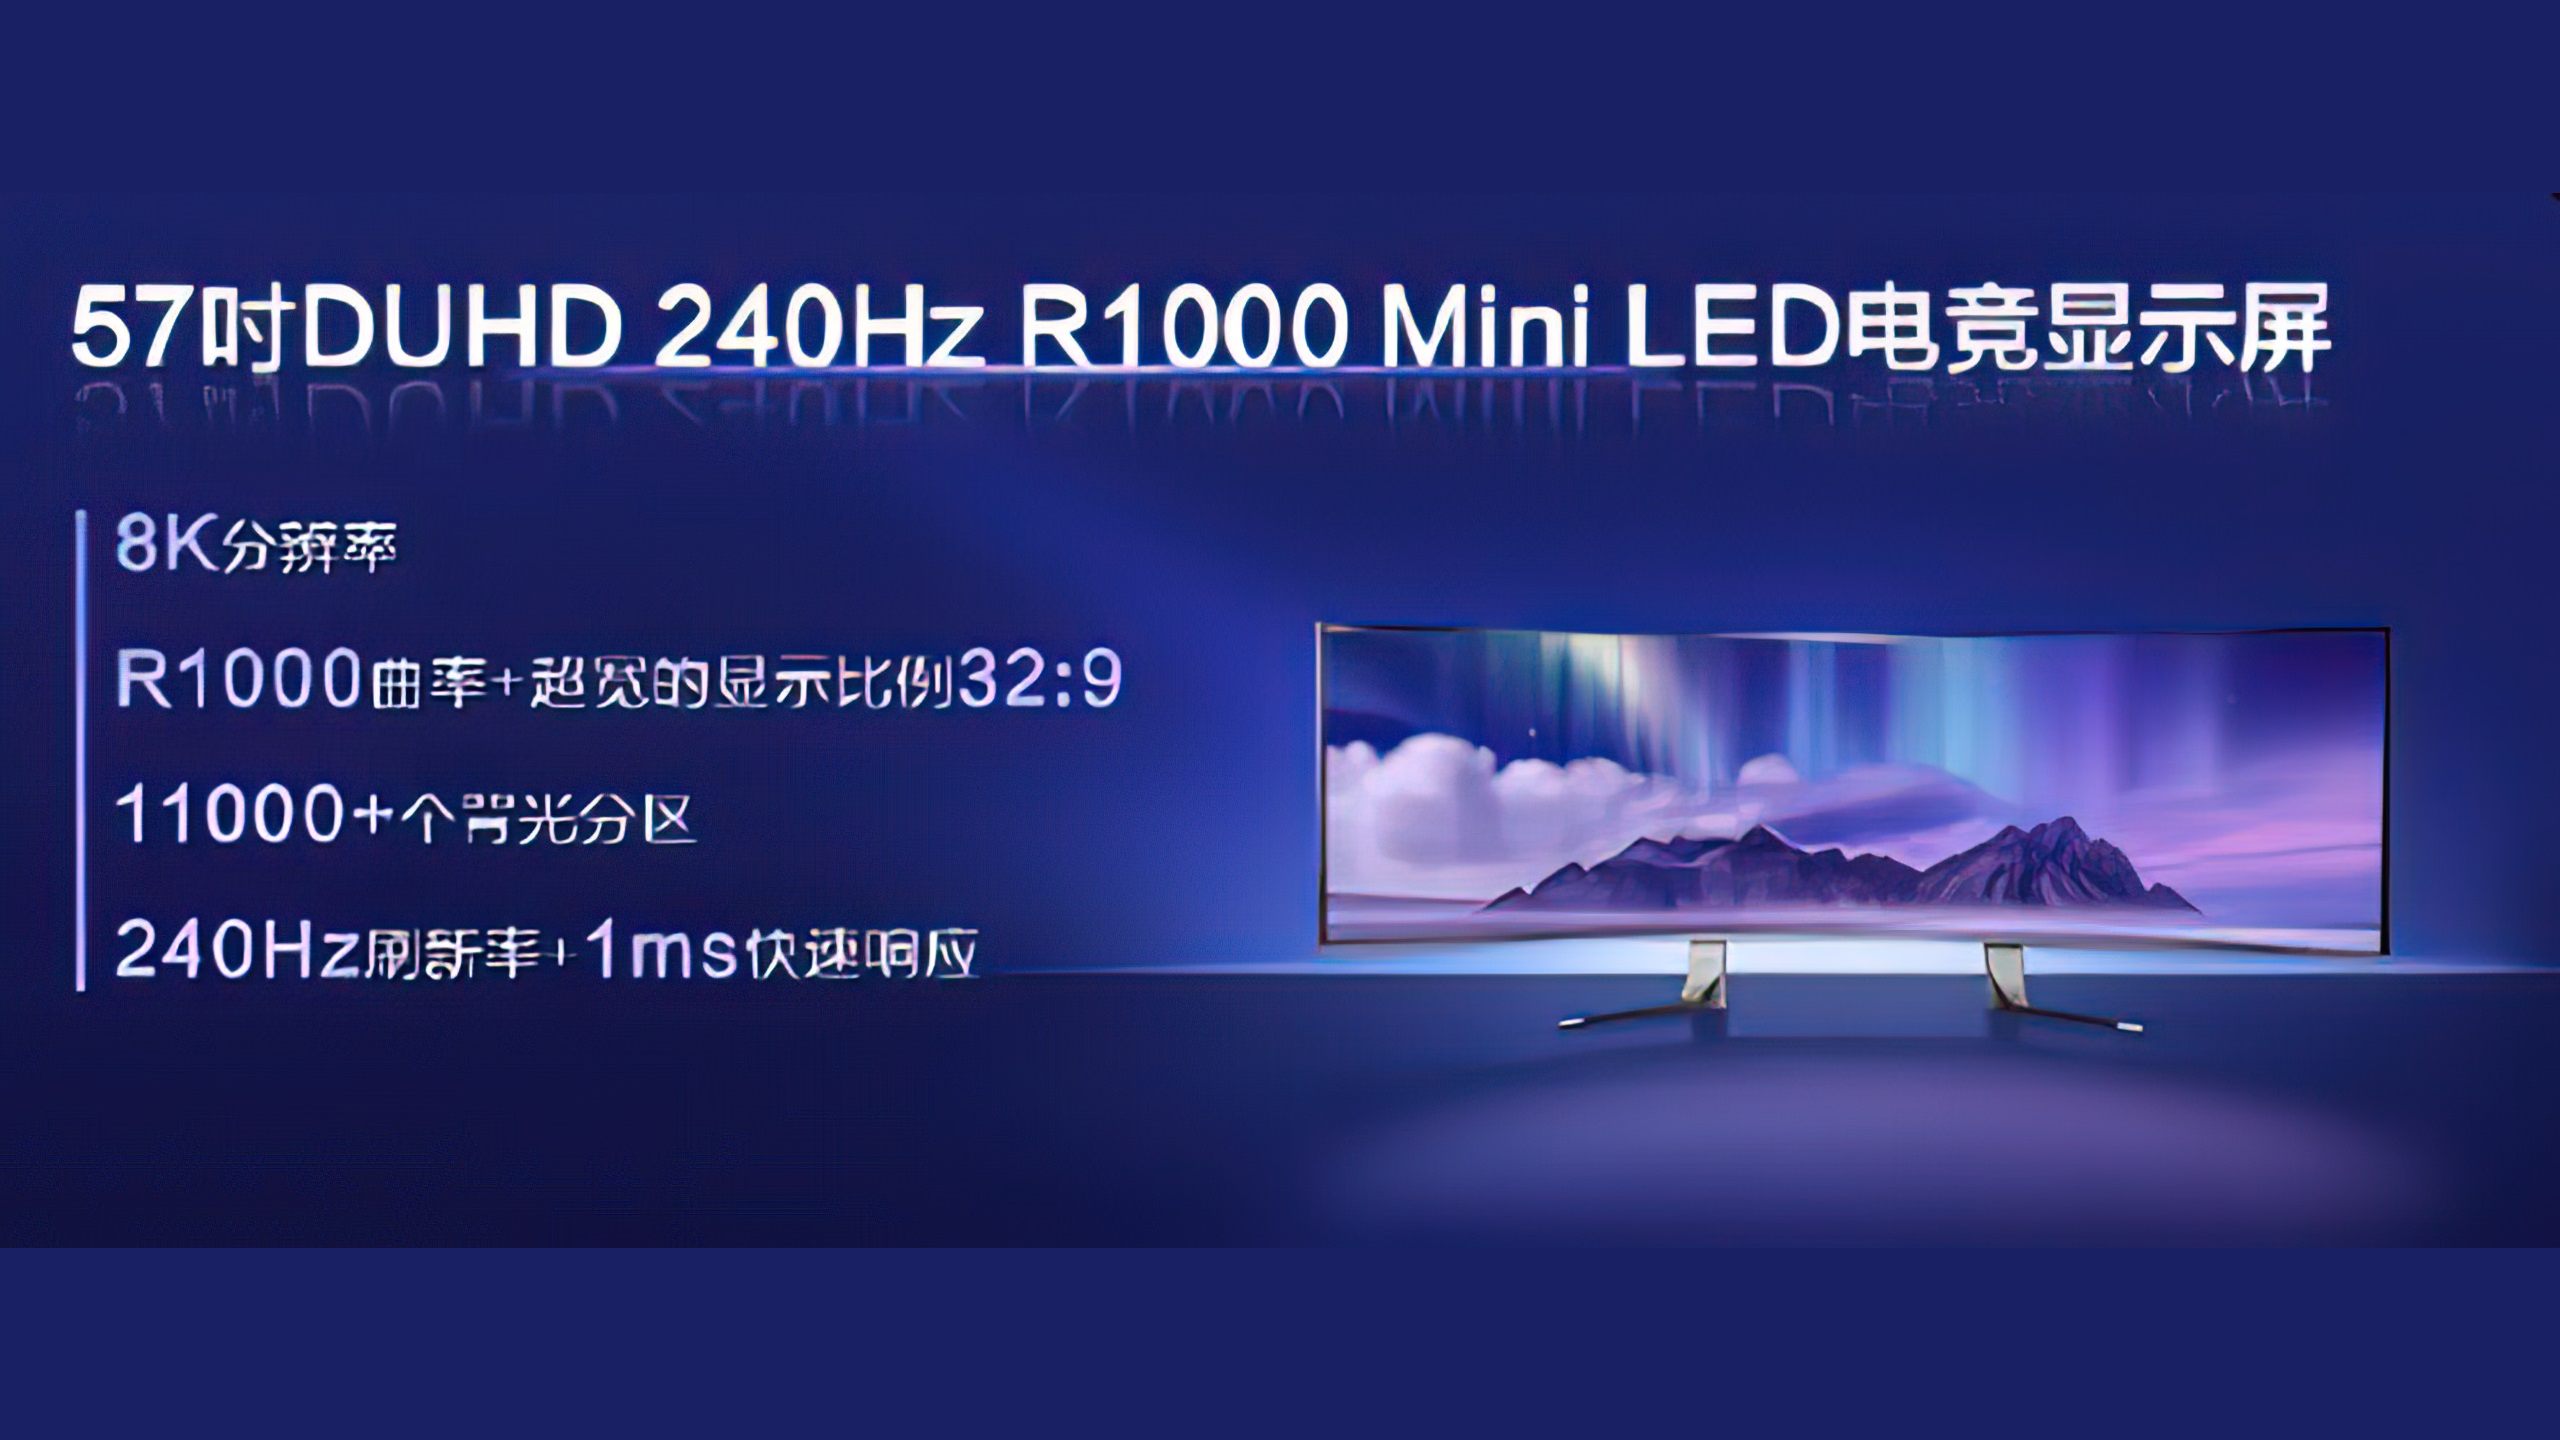 Renderbild zeigt 57 Zoll großen Mini-LED-Monitor von TCL.